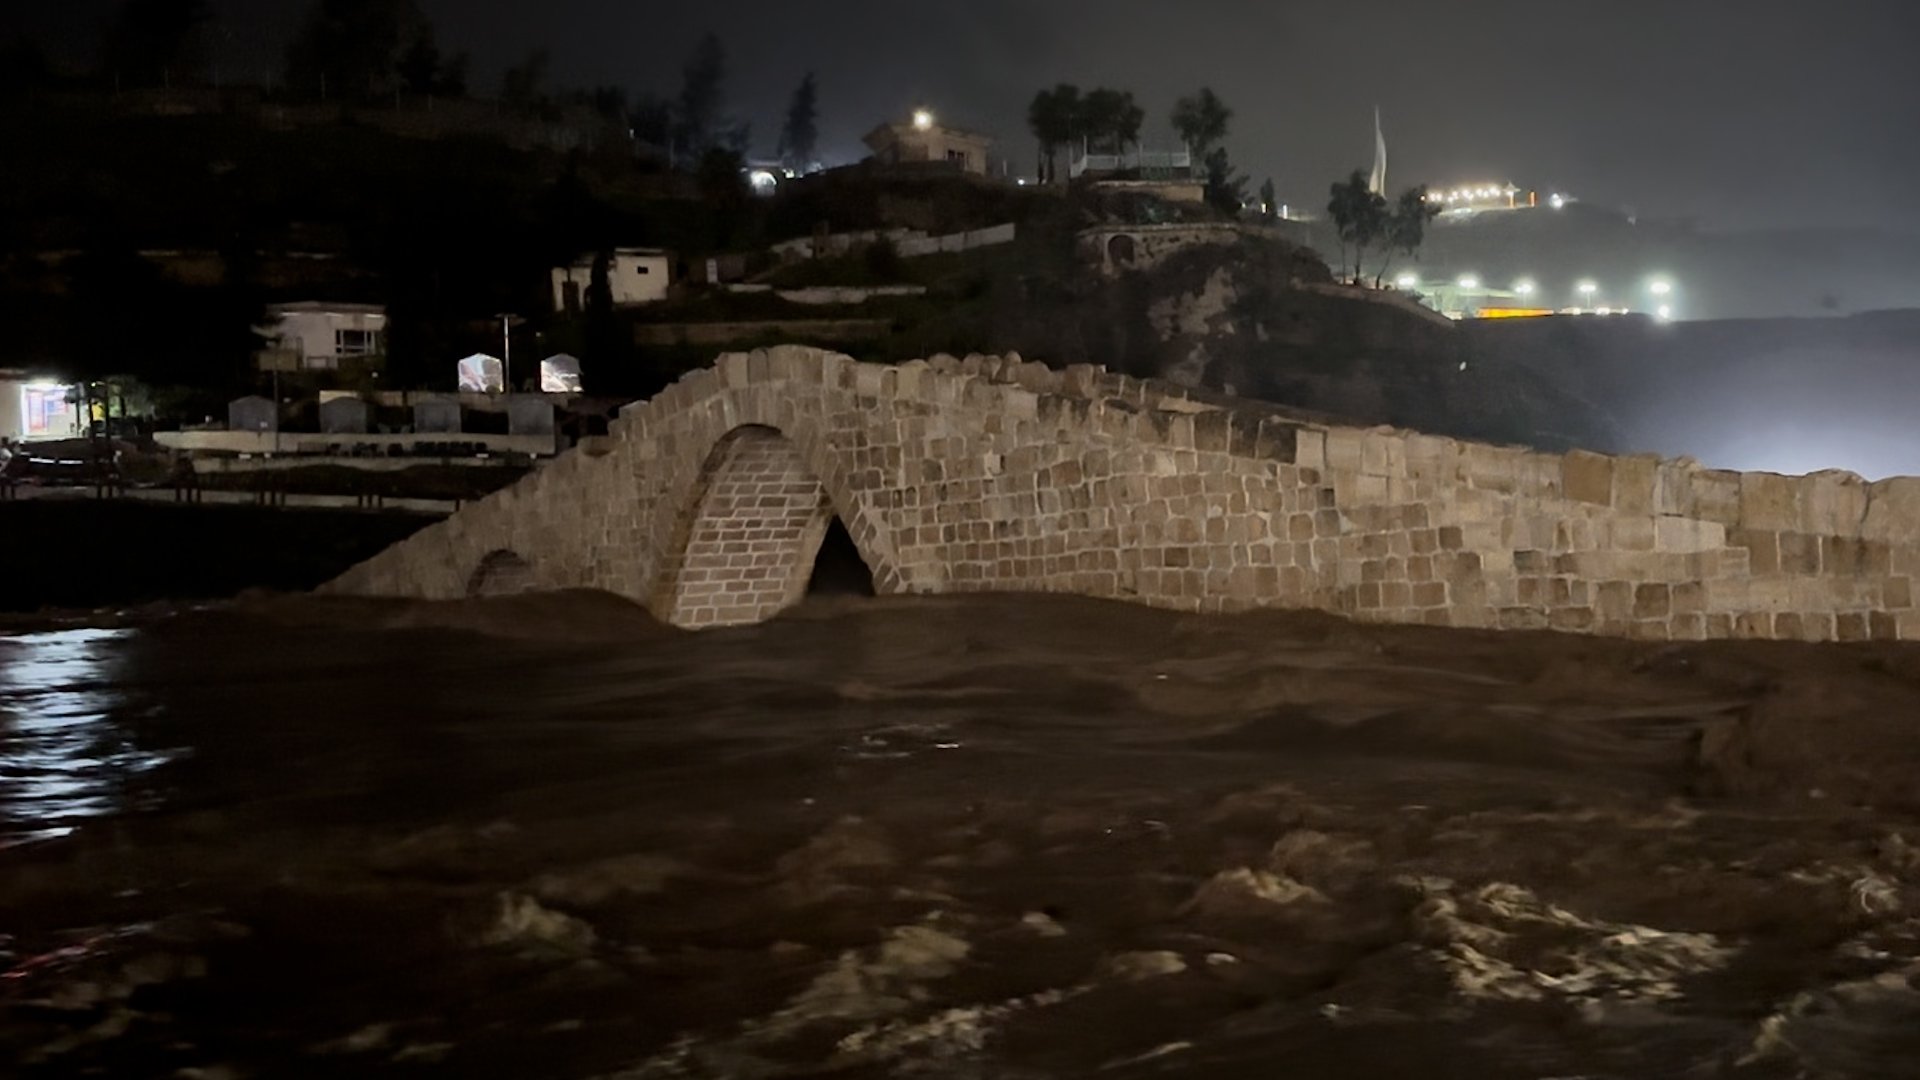 فيديو: جسر دهوك الكبير يكاد أن يغرق بالسيول والمياه تغمر الأعمدة الحجرية الشاهقة